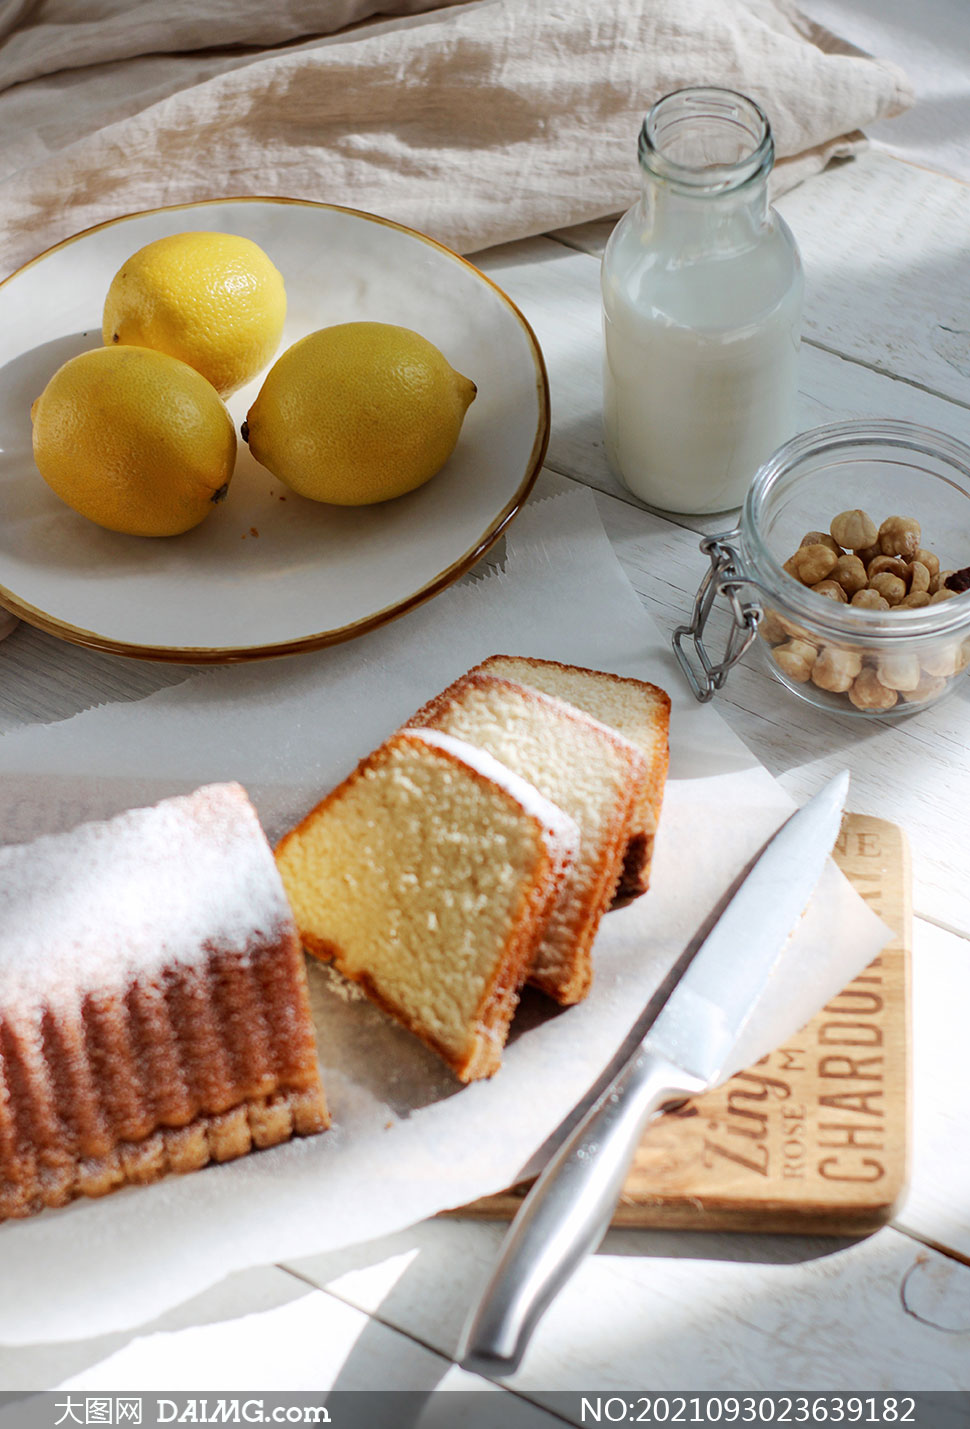 柠檬牛奶与面包坚果等摄影高清图片